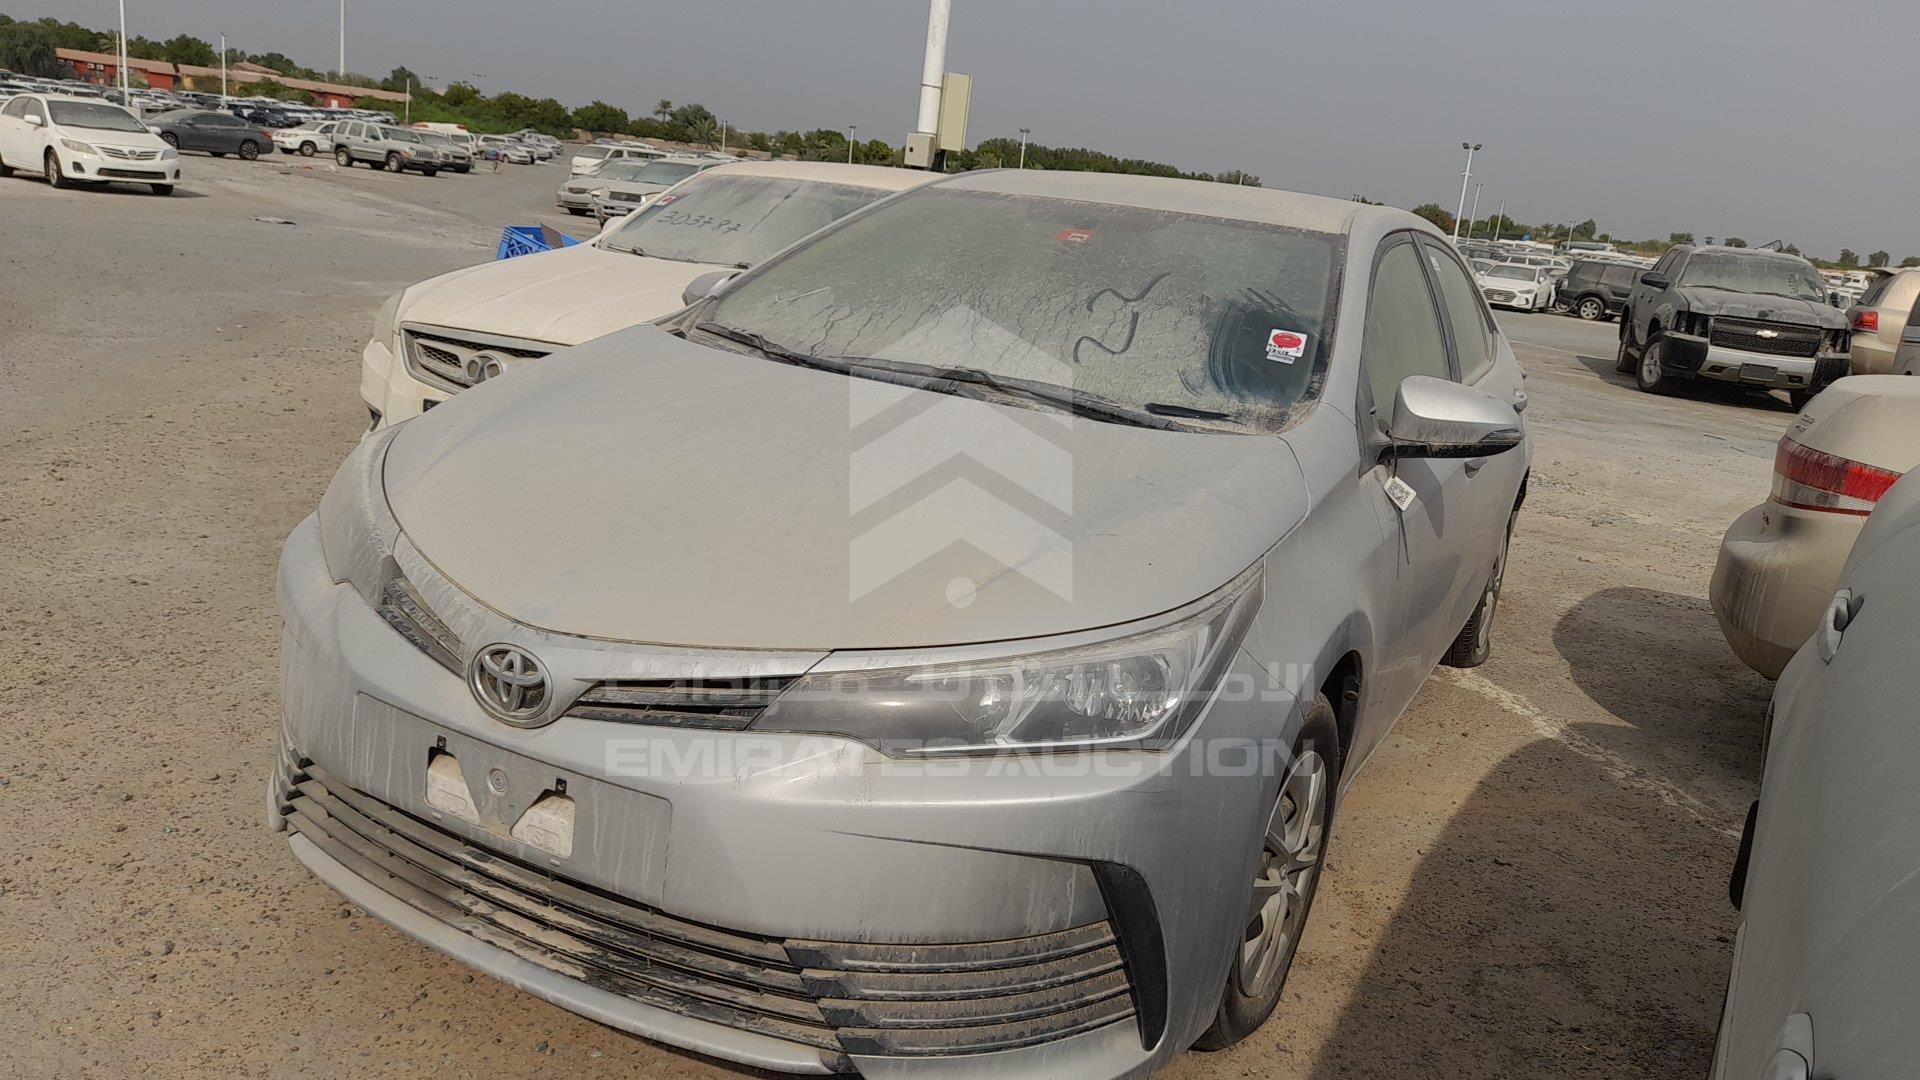 001 - Used Corolla price 5000 dirhams